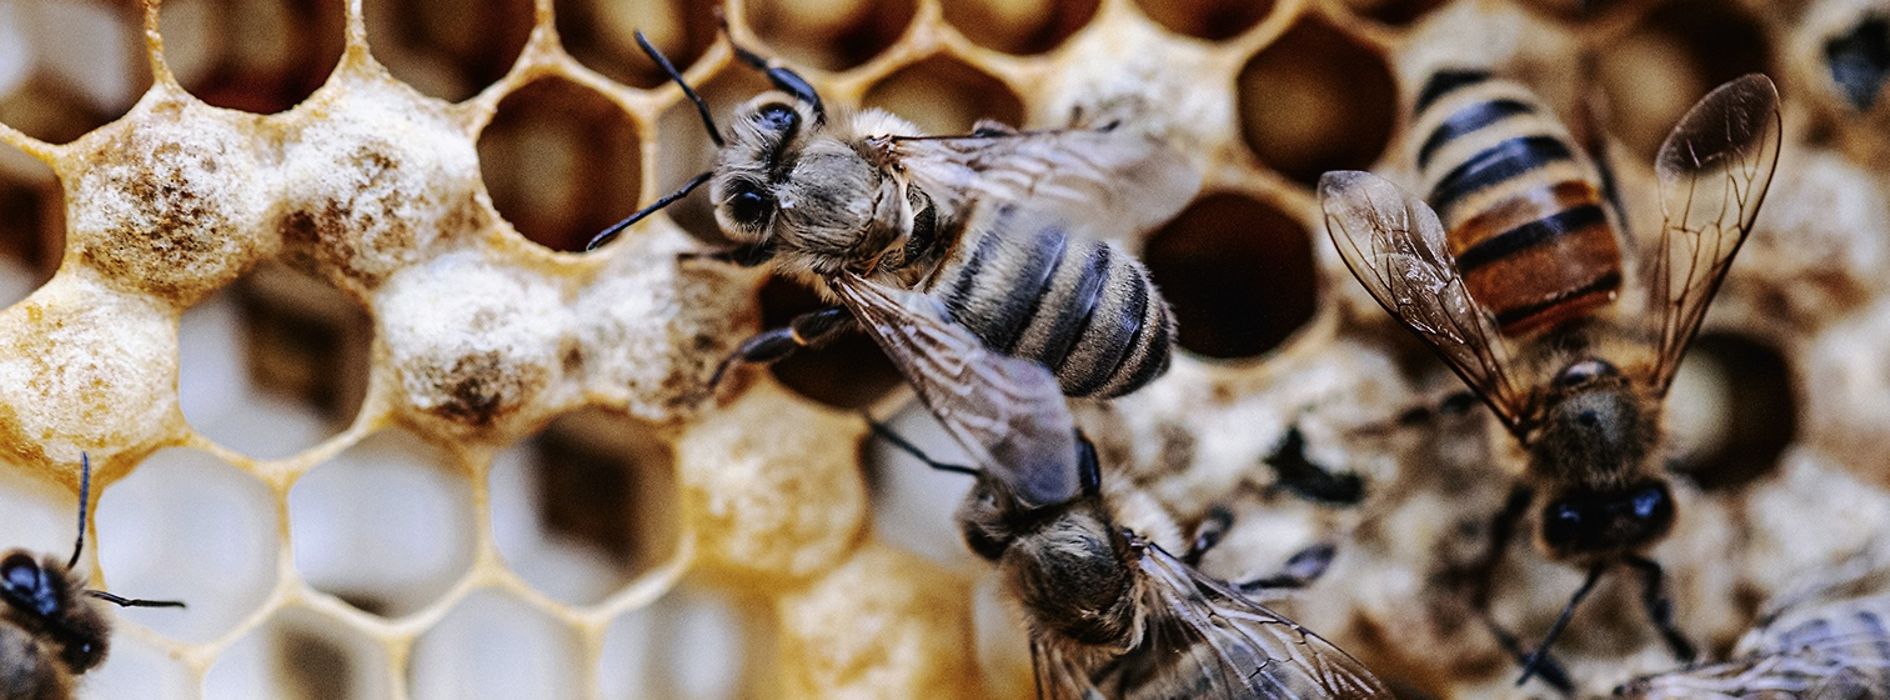 Cadre de miel avec abeilles